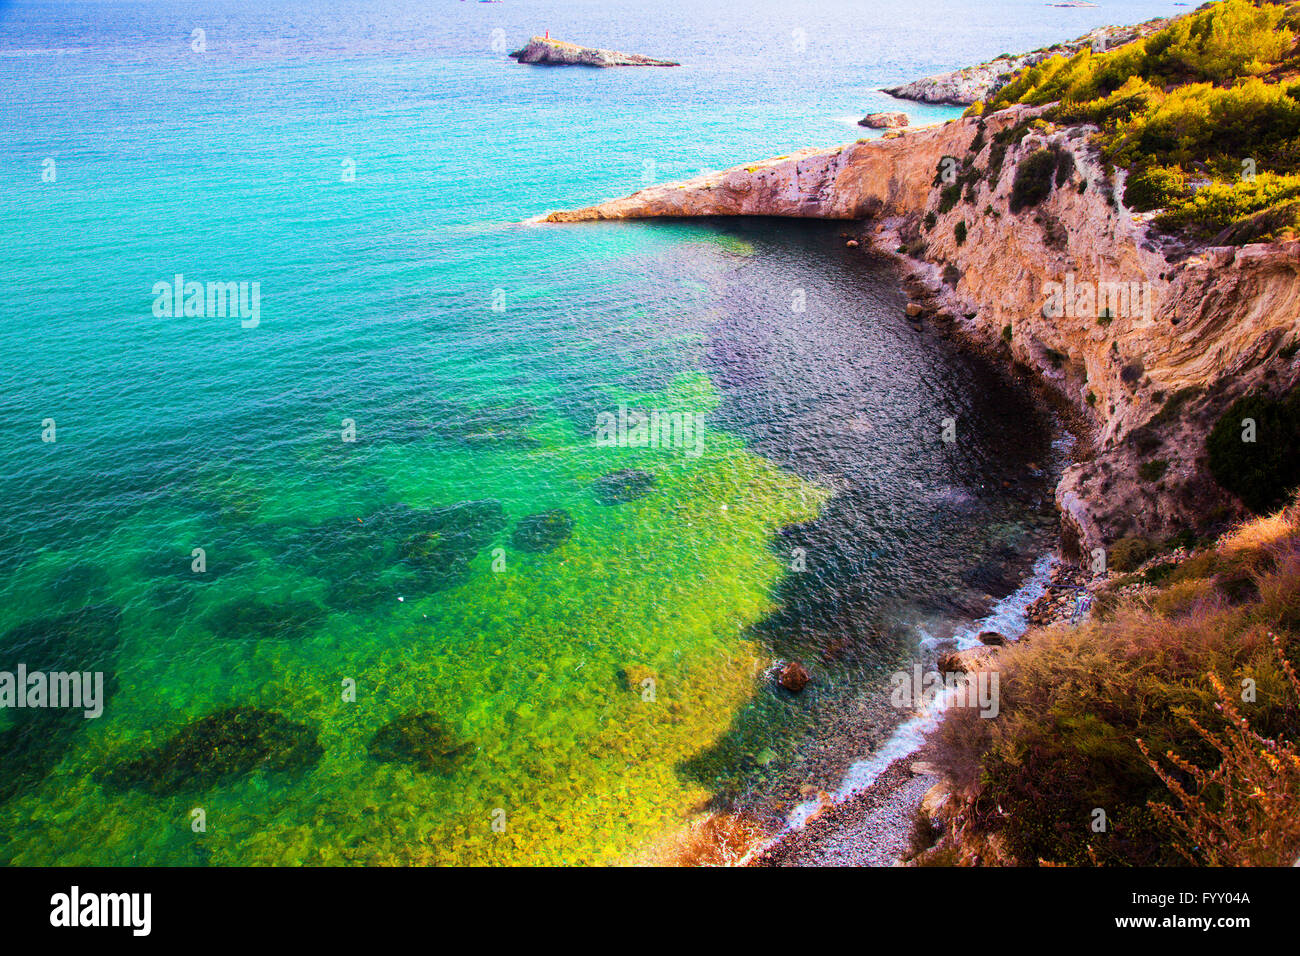 L'eau claire de la mer, Ibiza, Espagne Banque D'Images